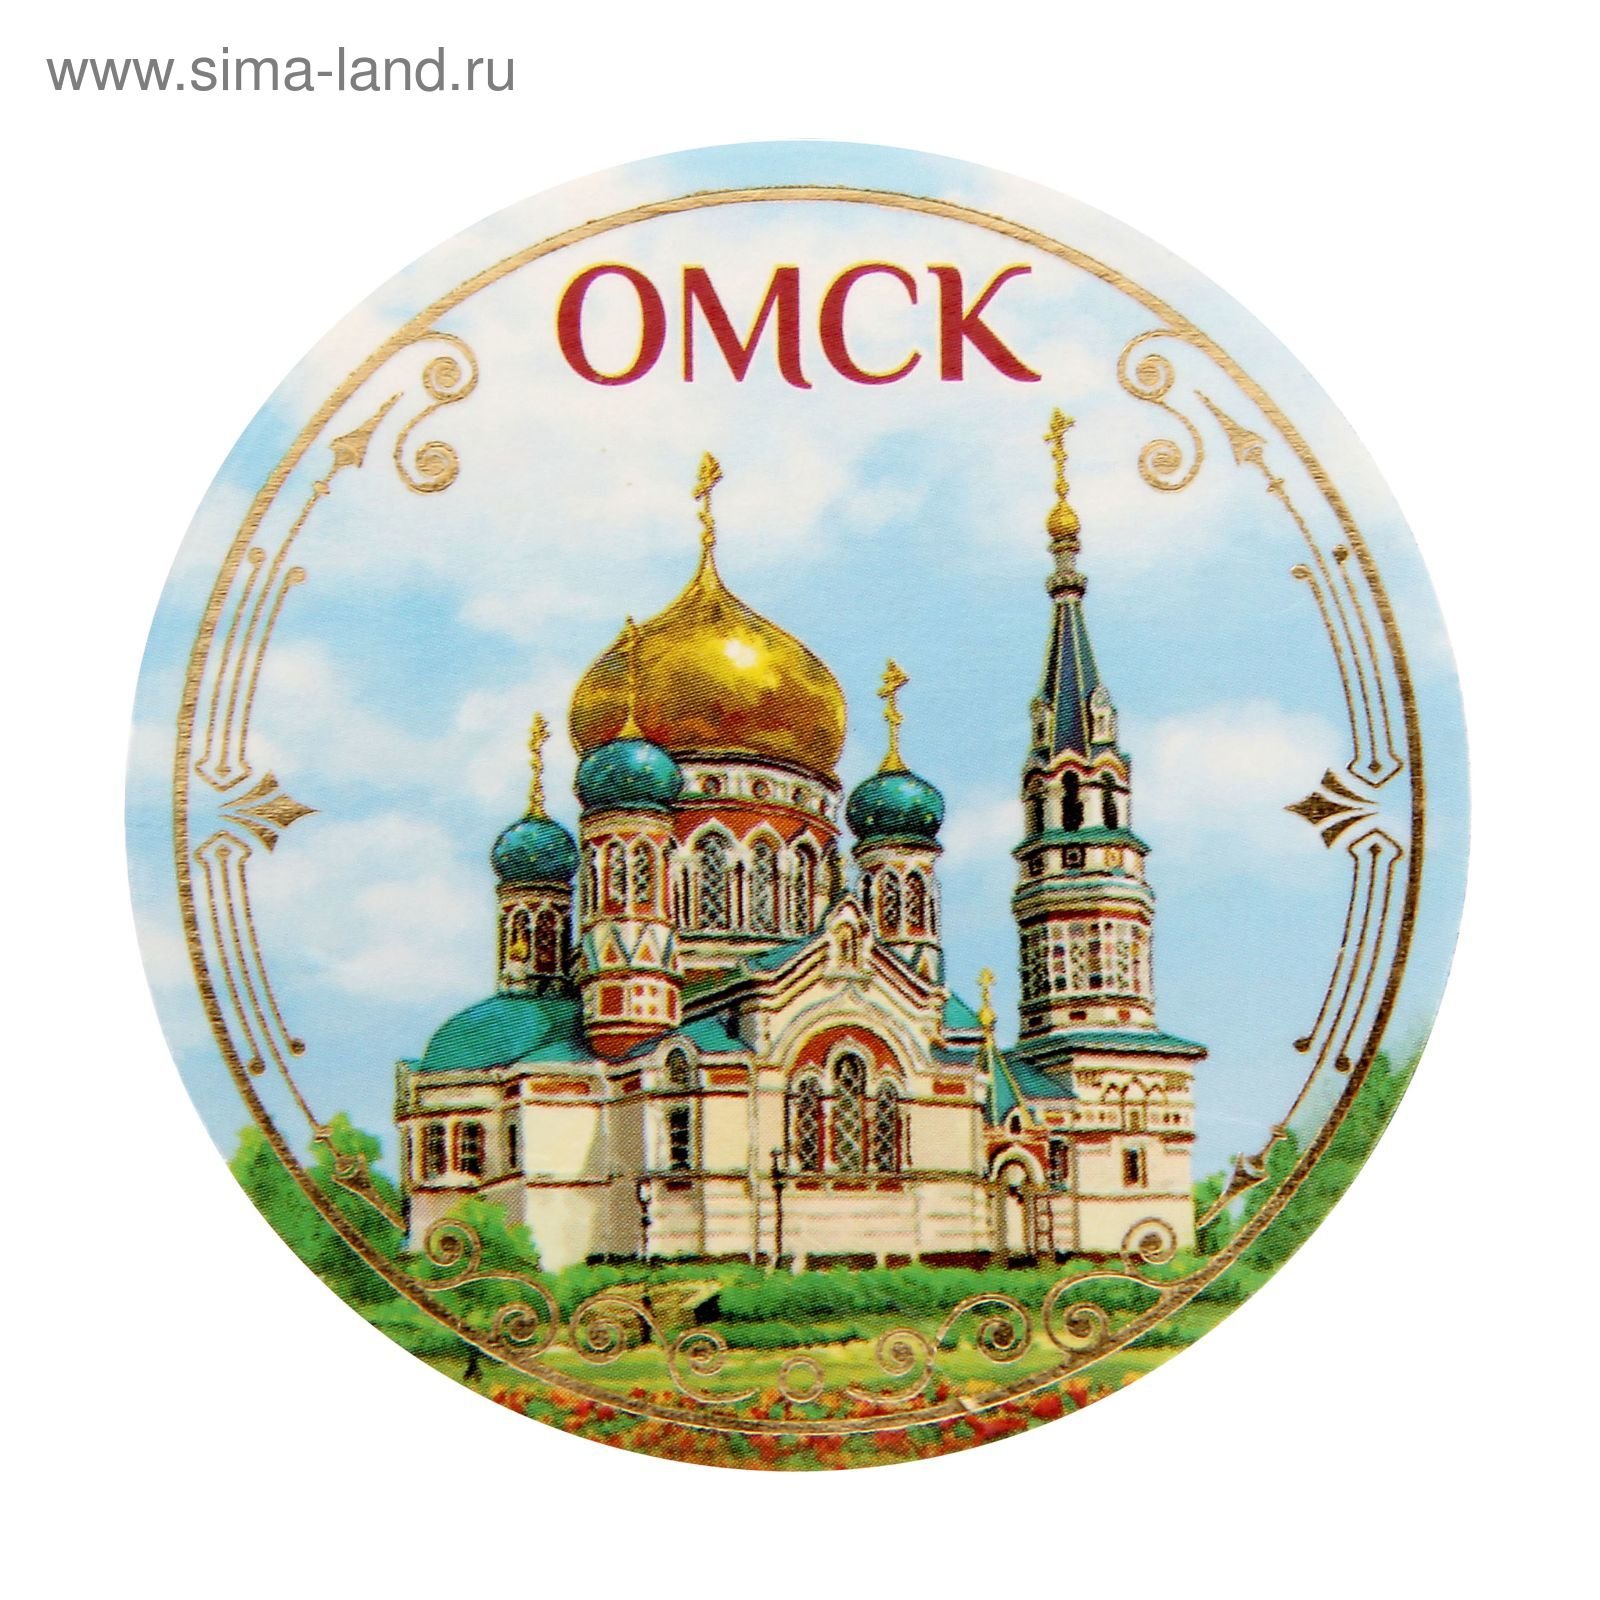 Открытки с городом Омск